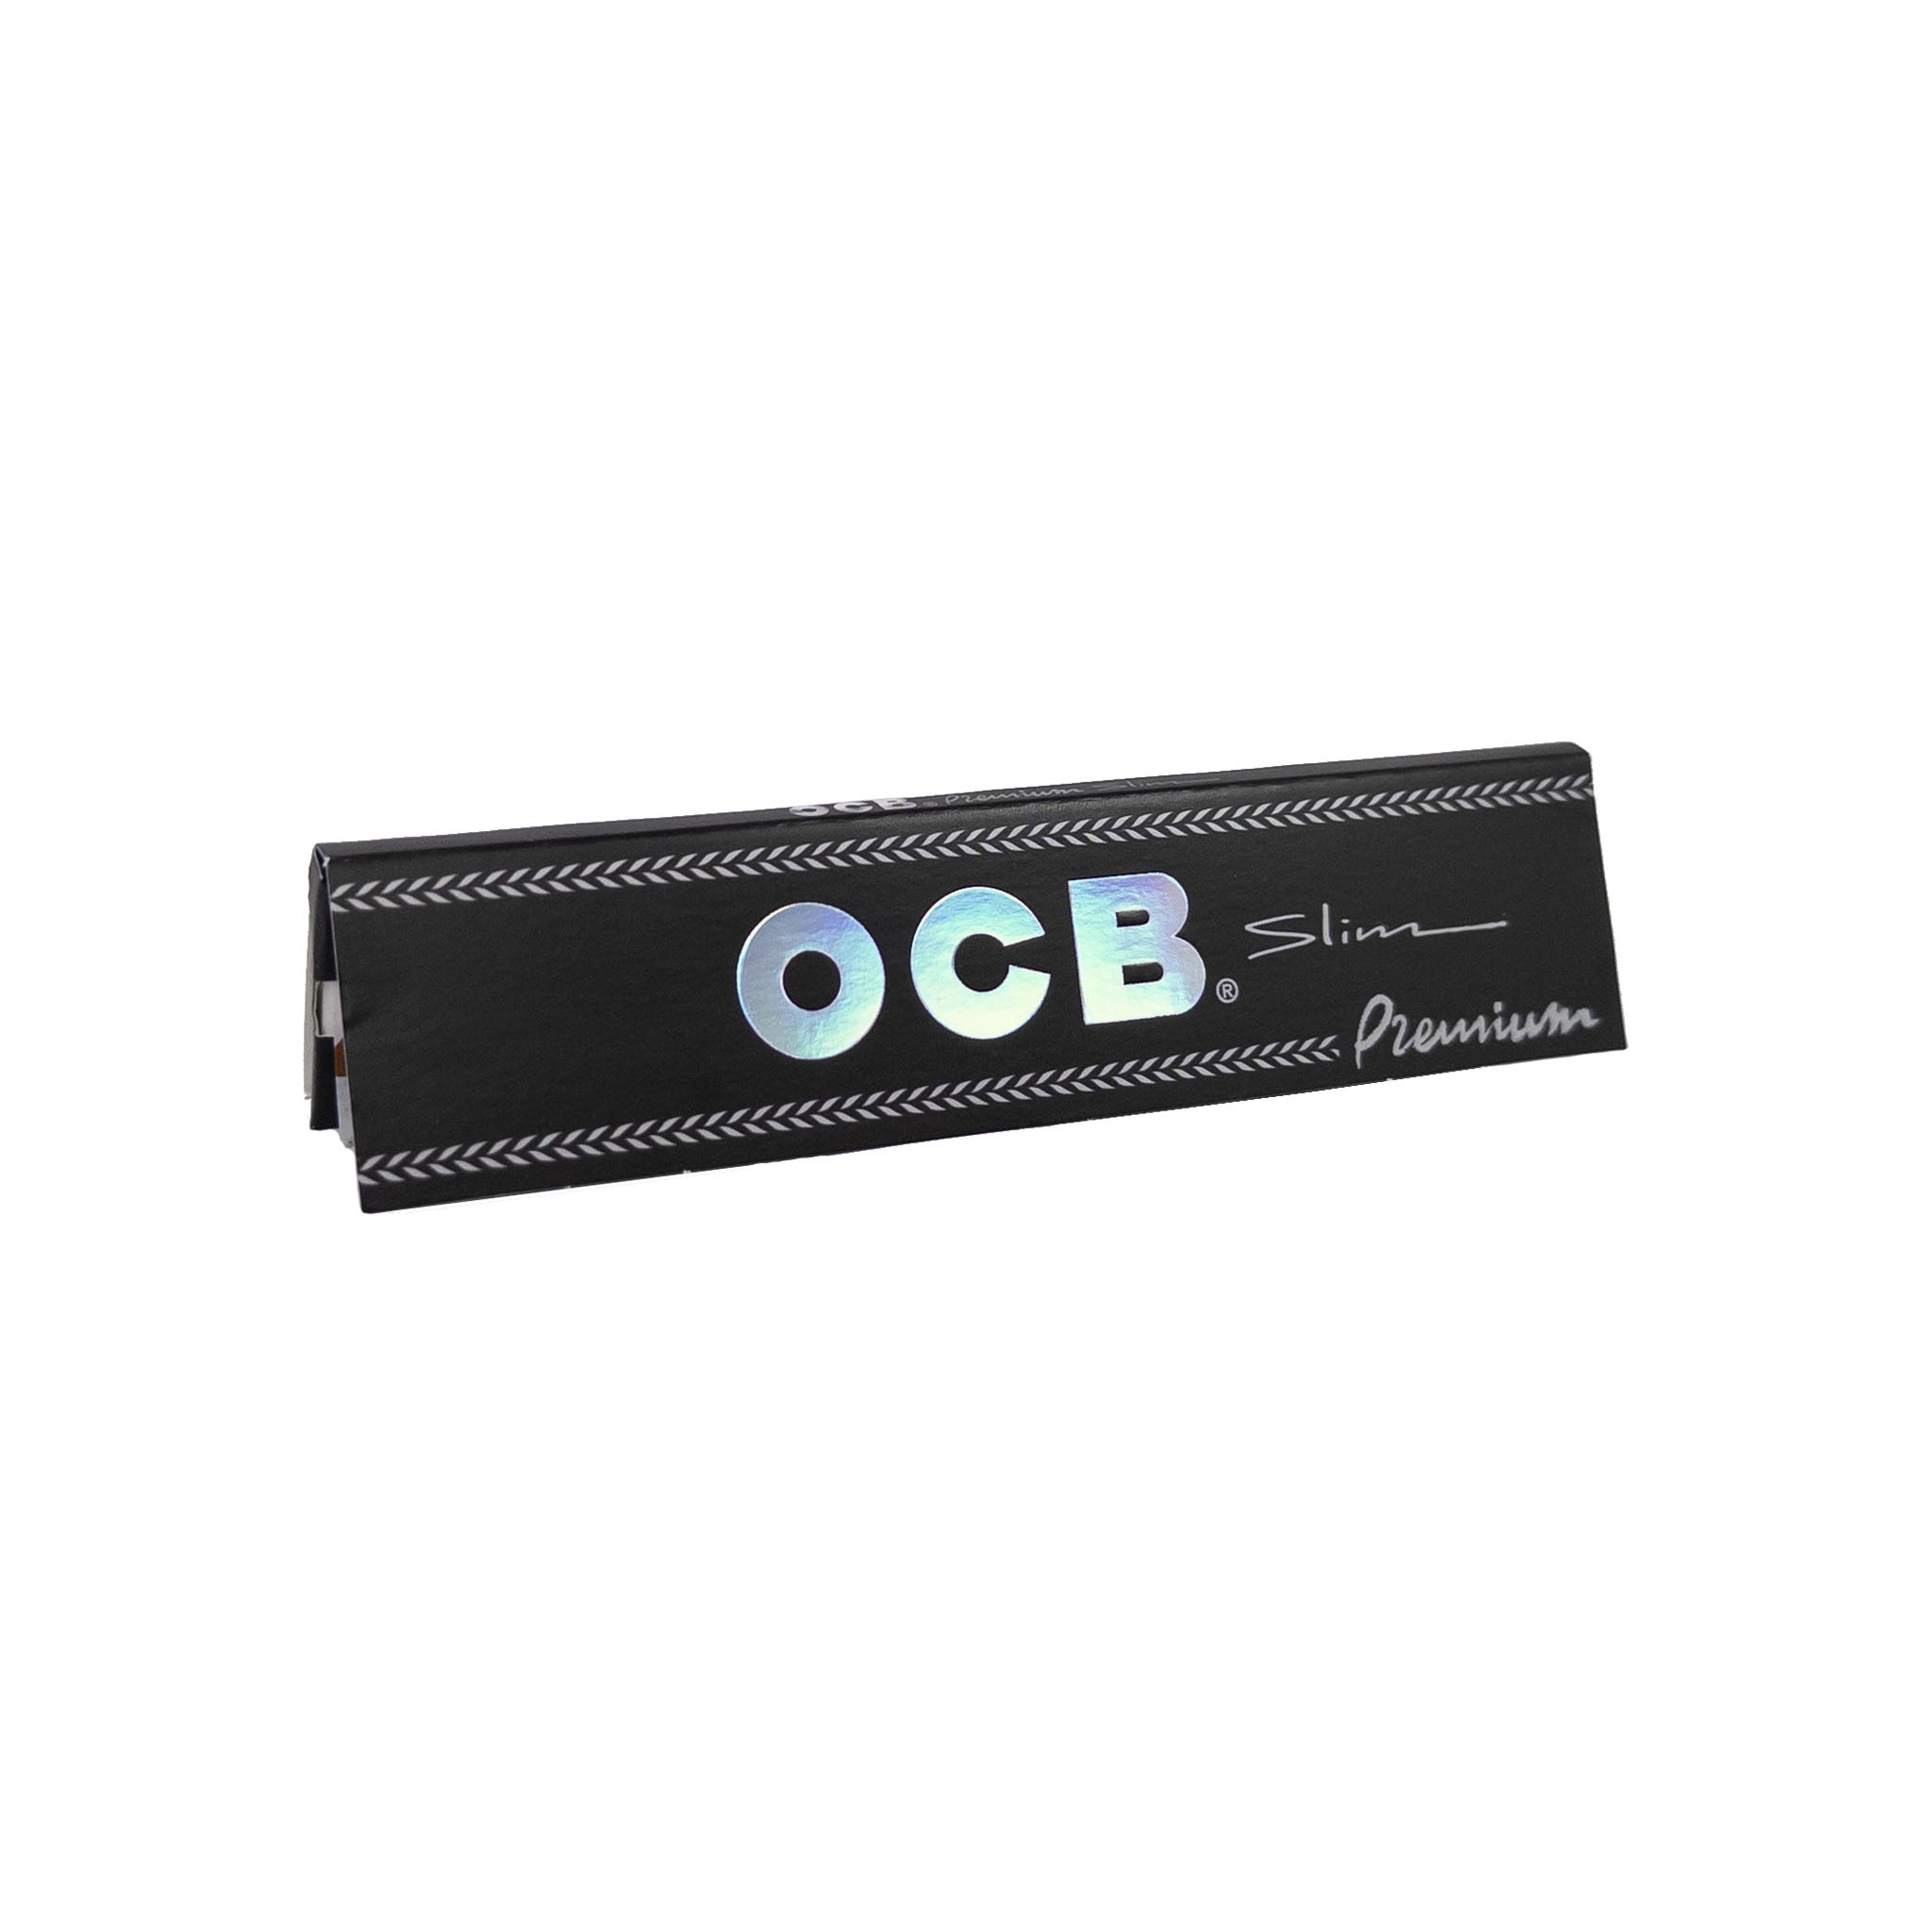 OCB Premium Slim Long Papers – Ideal für das Rollen von CBD-Zigaretten.